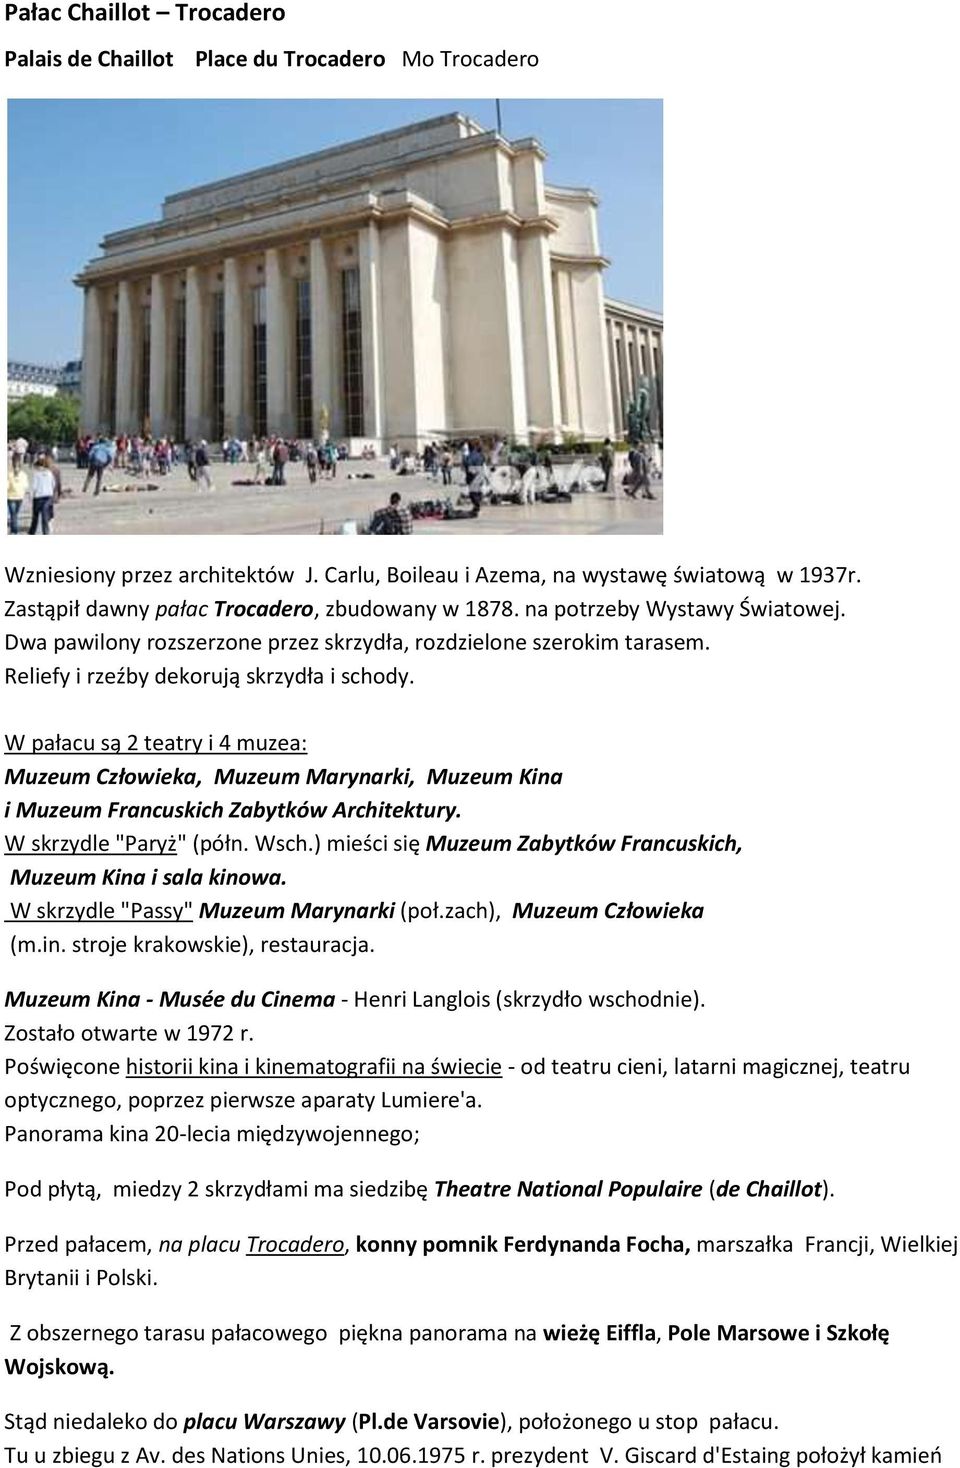 W pałacu są 2 teatry i 4 muzea: Muzeum Człowieka, Muzeum Marynarki, Muzeum Kina i Muzeum Francuskich Zabytków Architektury. W skrzydle "Paryż" (półn. Wsch.